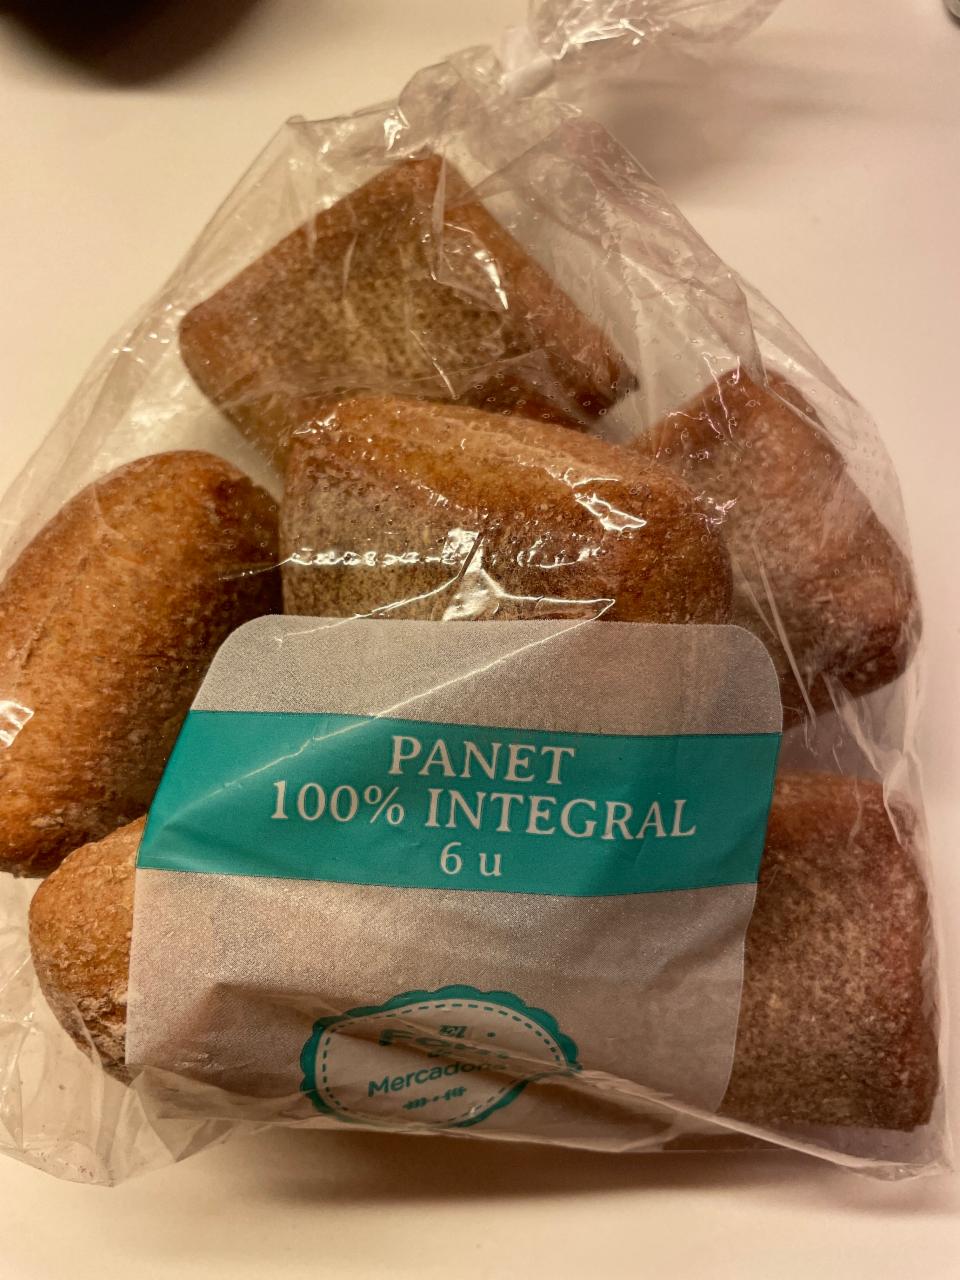 Фото - Хліб висівковий Panet 100% Integral Mercadona